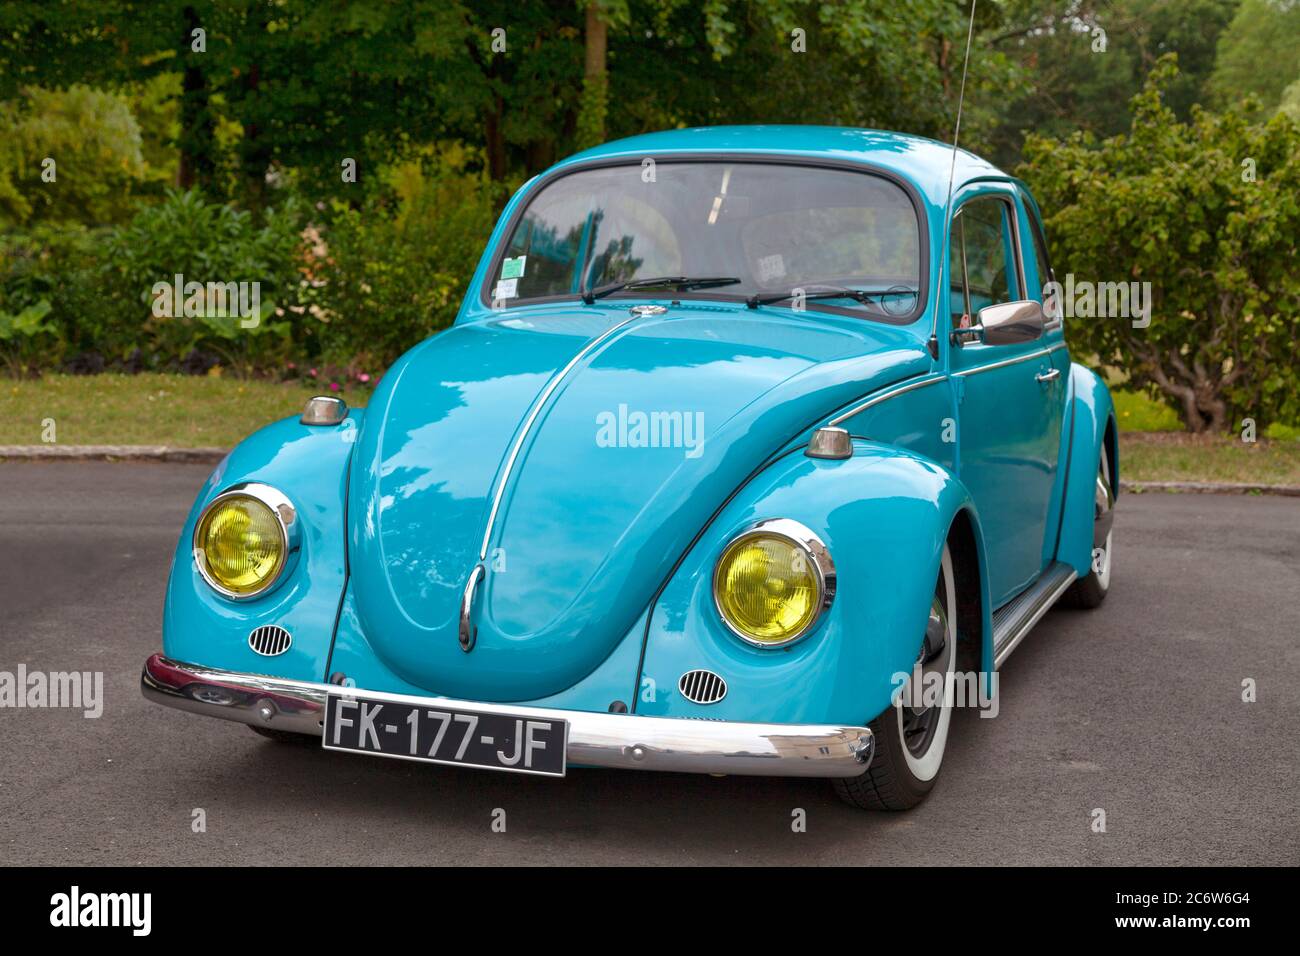 Lamorlaye, France - juillet 05 2020 : la Volkswagen Beetle est fabriquée et commercialisée par le constructeur automobile allemand Volkswagen (VW) depuis 1938. Banque D'Images